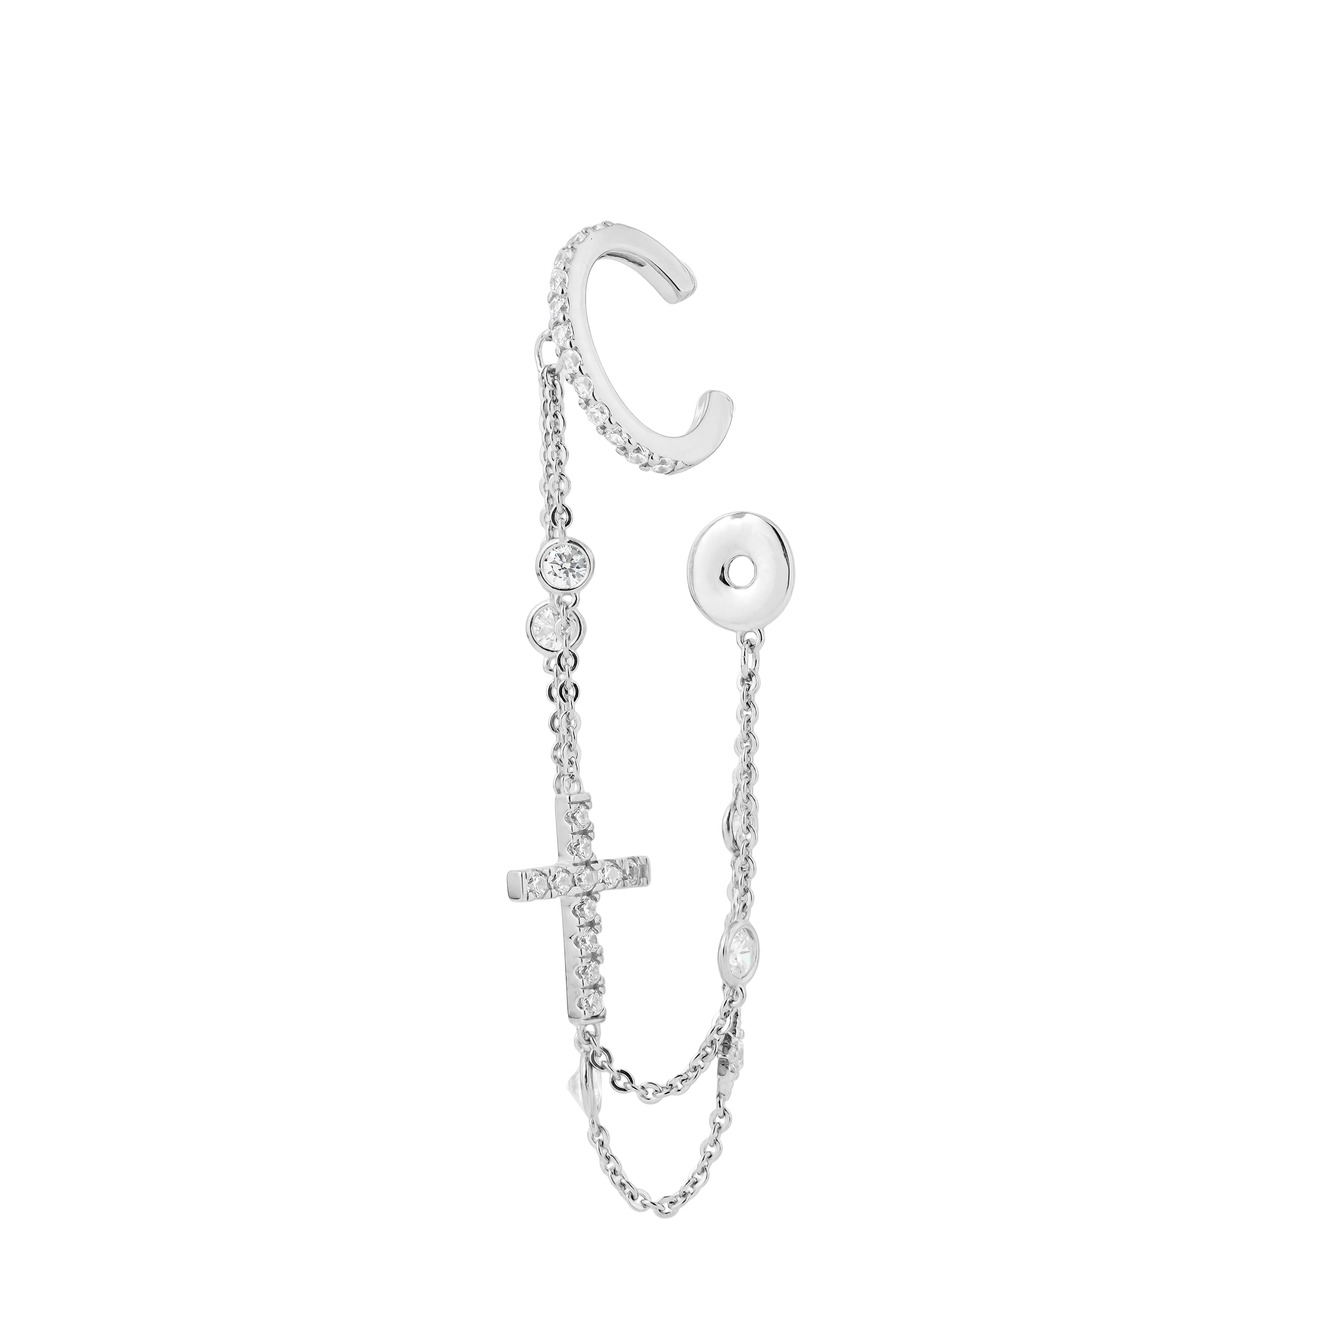 SKYE Серебряный кафф с цепочками в два ряда, кастами, прямым крестом и монеткой skye серебряный браслет с жемчугом